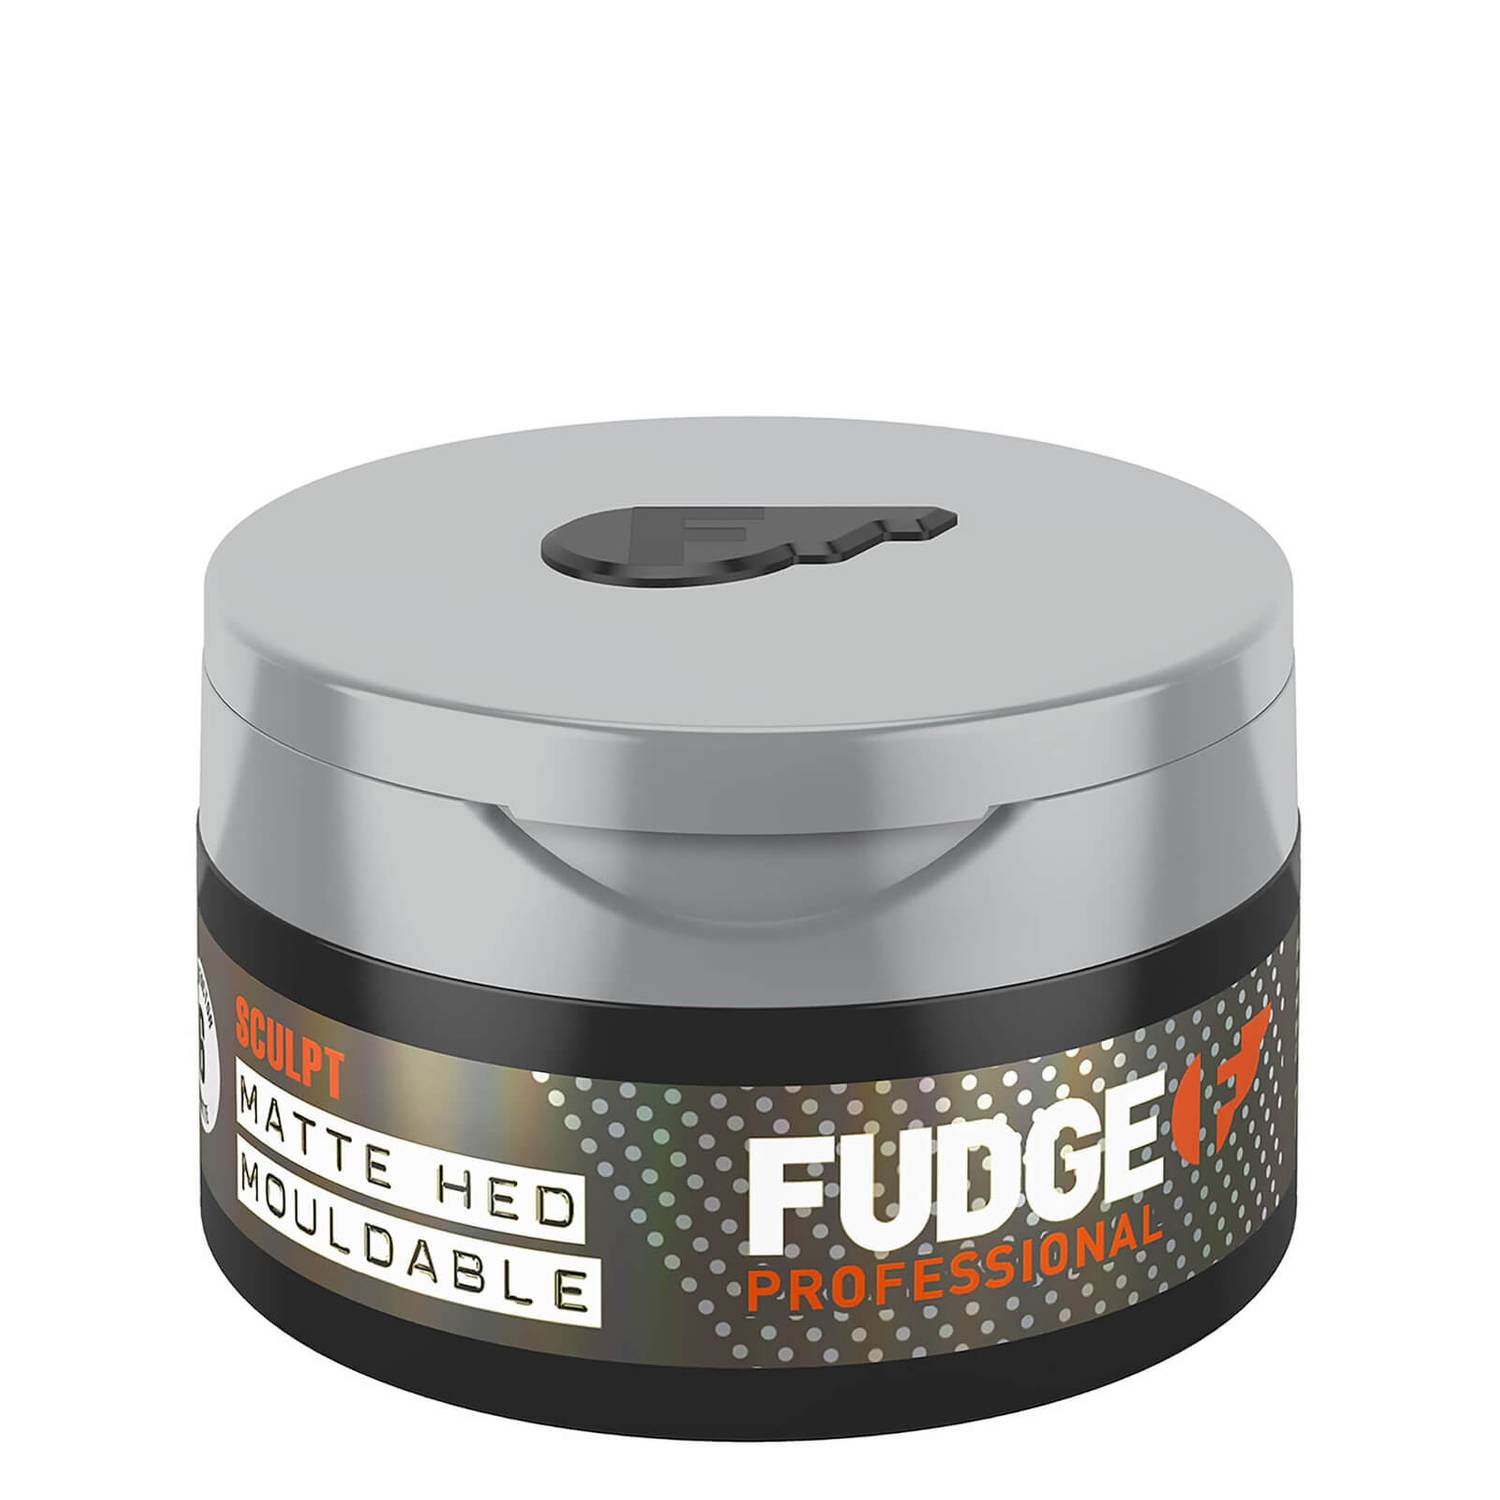 Fudge Matte Head Mouldable 75gr